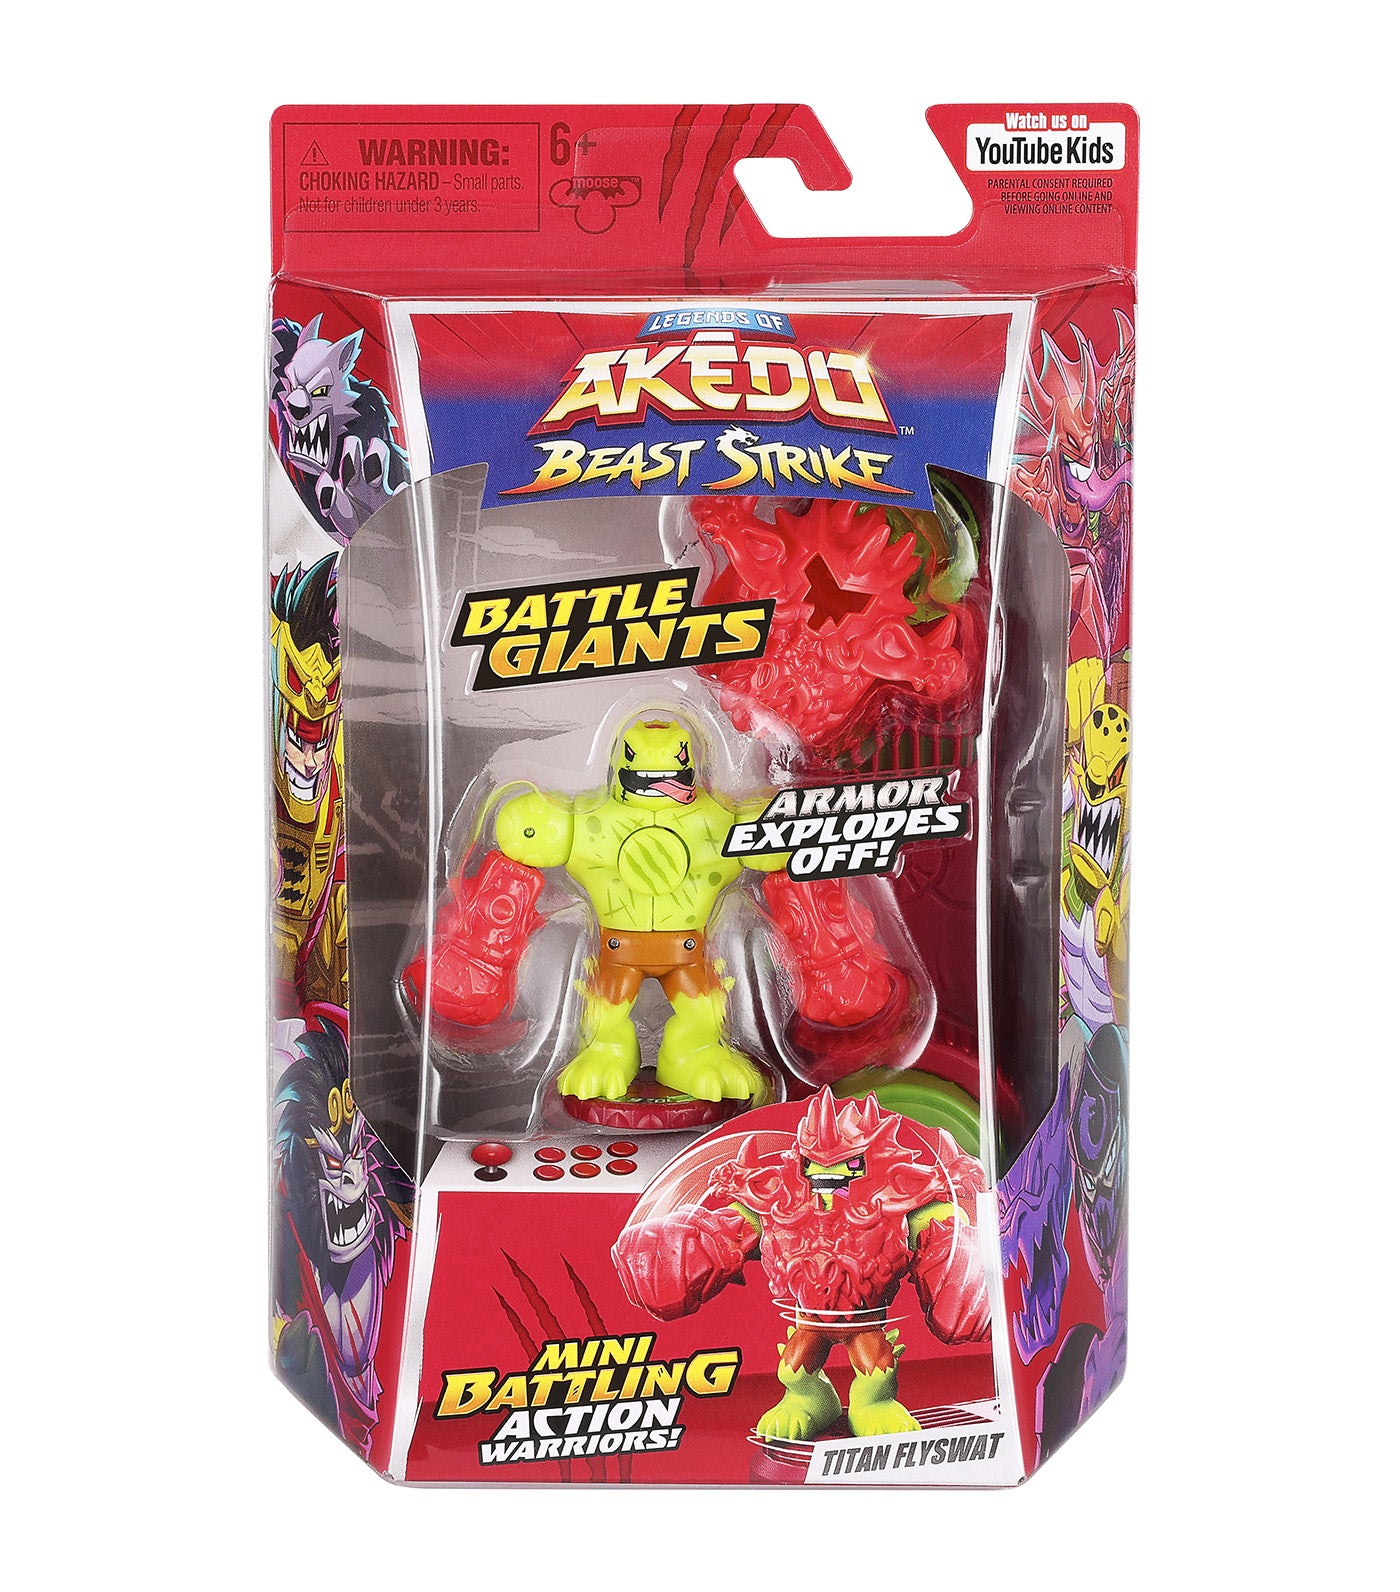 Legends of Akedo Beast Strike Battle Giants Titan Flyswat Action Figure